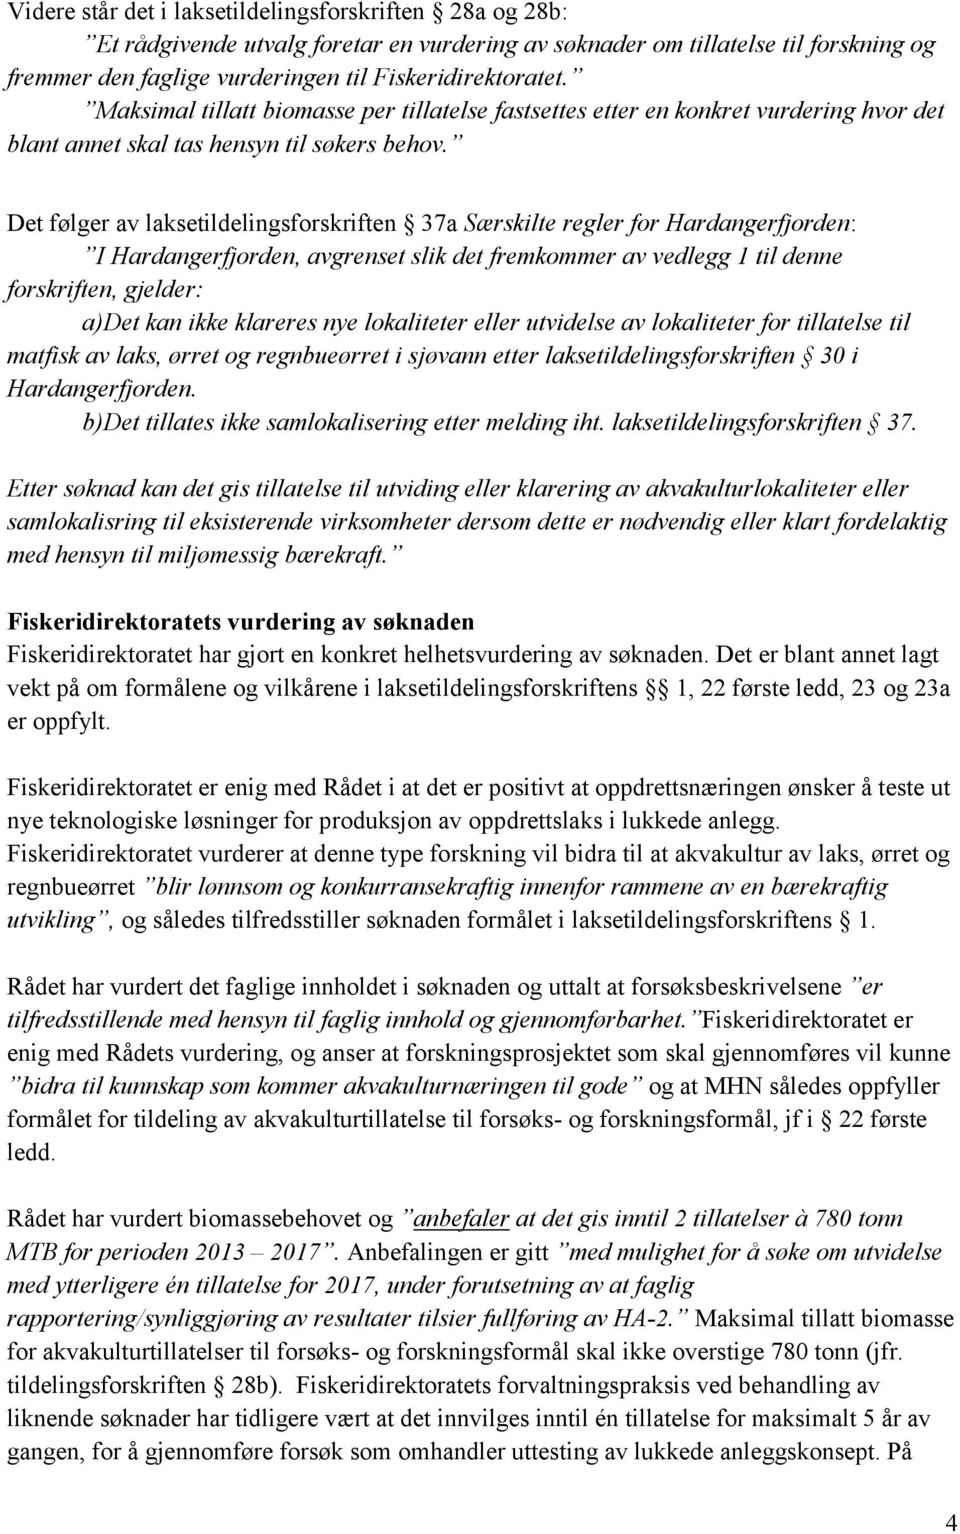 Det følger av laksetildelingsforskriften 37a Særskilte regler for Hardangerfjorden: I Hardangerfjorden, avgrenset slik det fremkommer av vedlegg 1 til denne forskriften, gjelder: a)det kan ikke